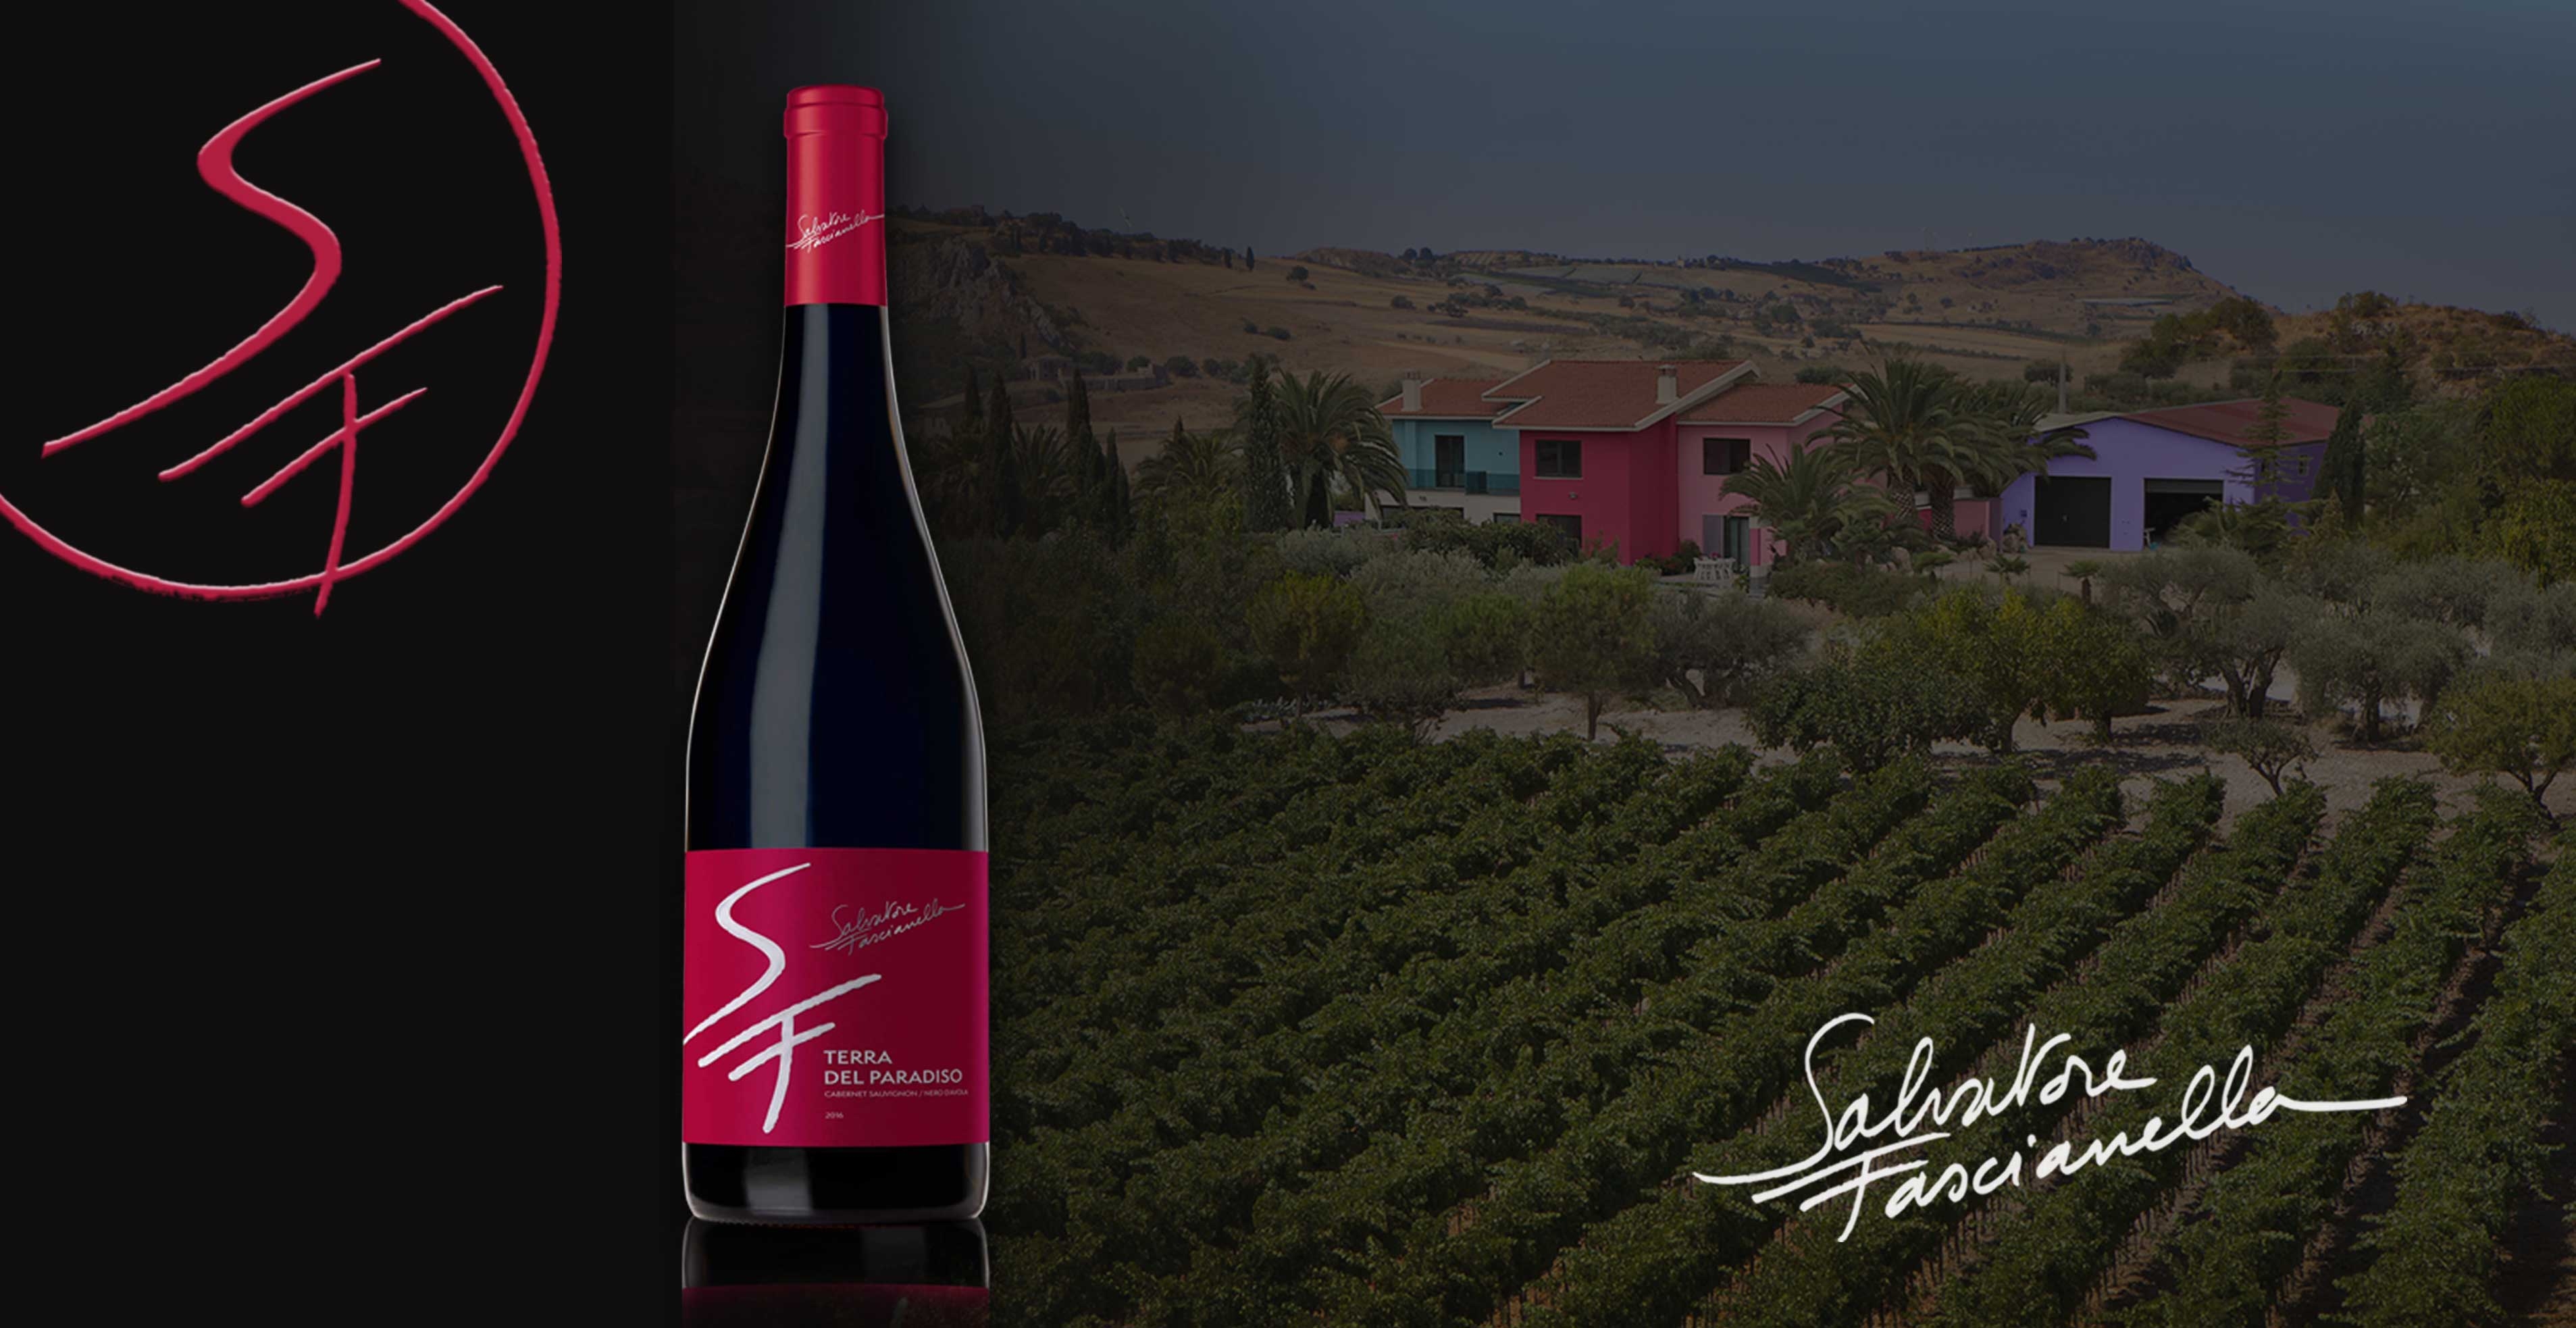 Rode wijn Salvatore Terra del Paradiso